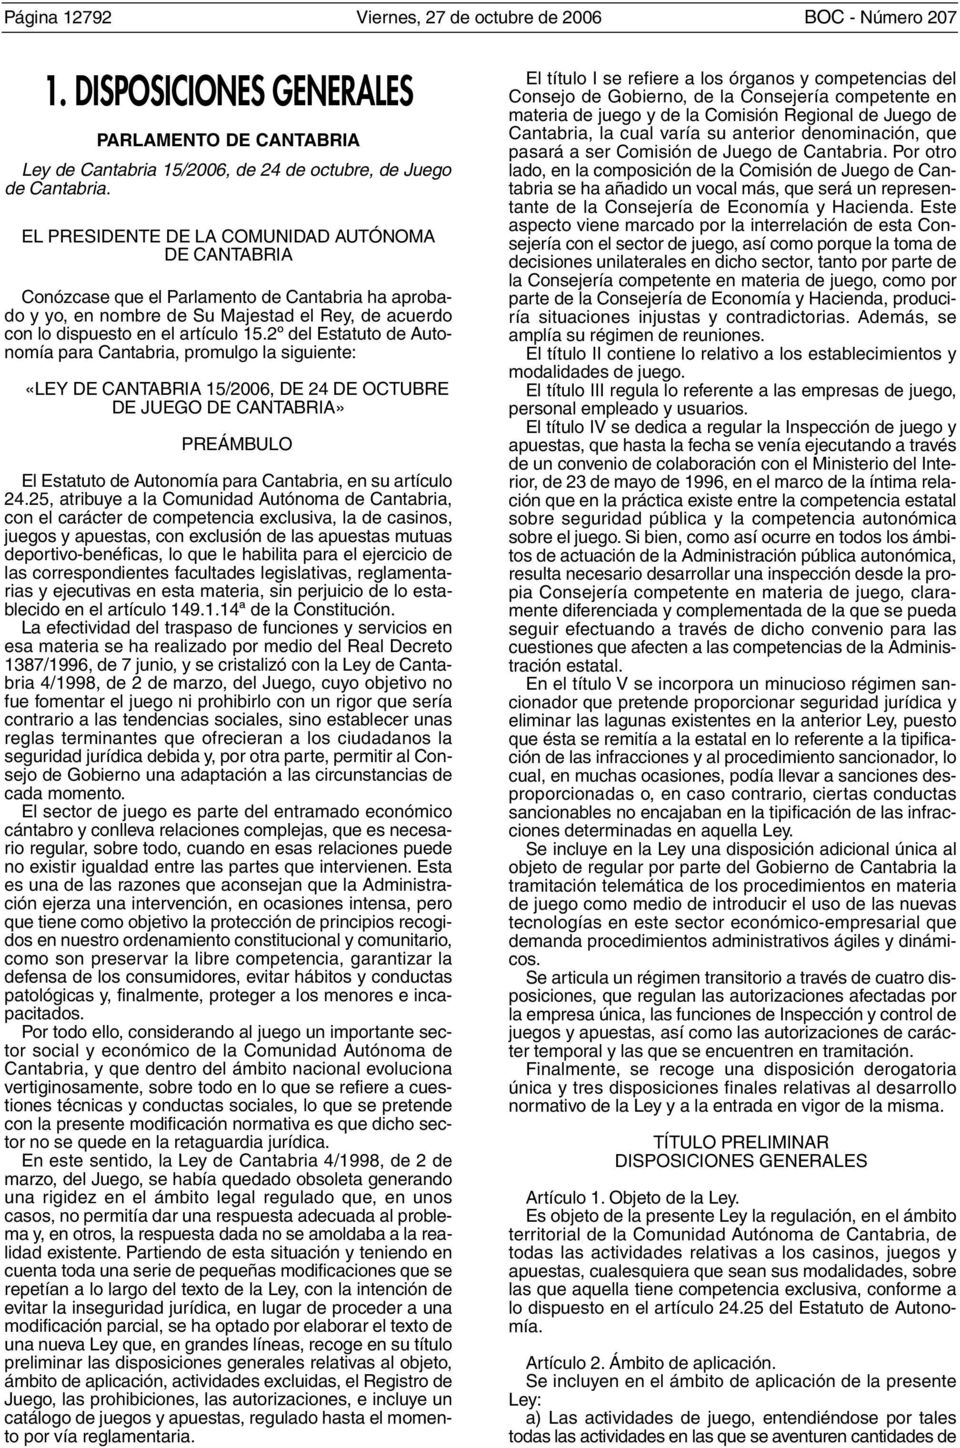 2º del Estatuto de Autonomía para Cantabria, promulgo la siguiente: «LEY DE CANTABRIA 15/2006, DE 24 DE OCTUBRE DE JUEGO DE CANTABRIA» PREÁMBULO El Estatuto de Autonomía para Cantabria, en su